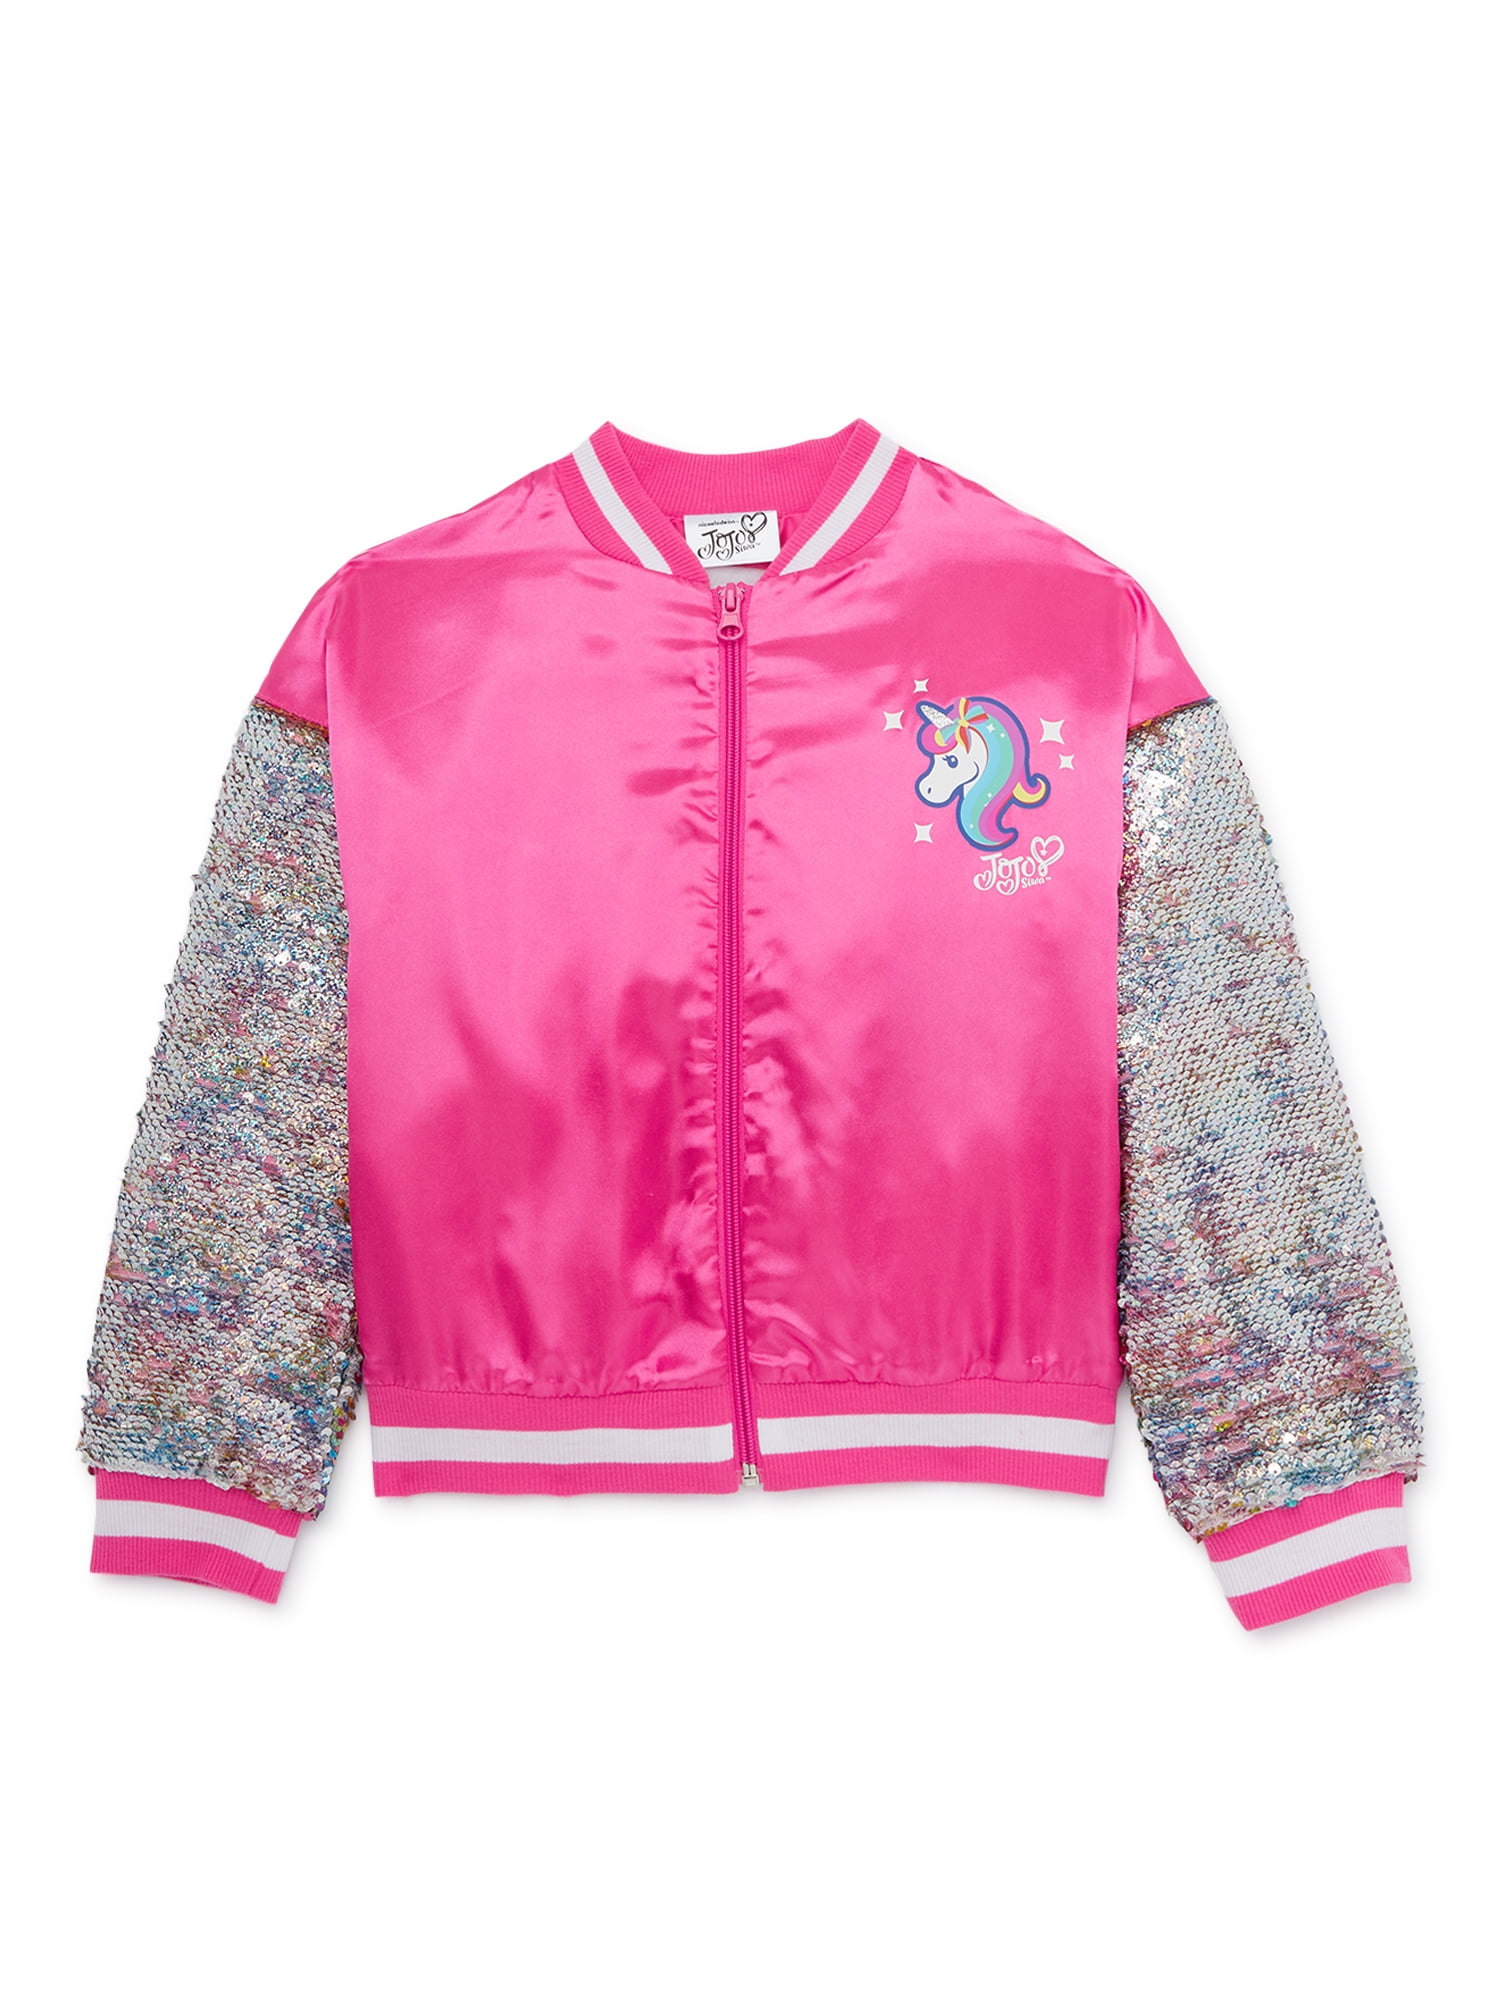 XL 14/16 Jojos Closet Girls JoJo Siwa Sequin Jacket